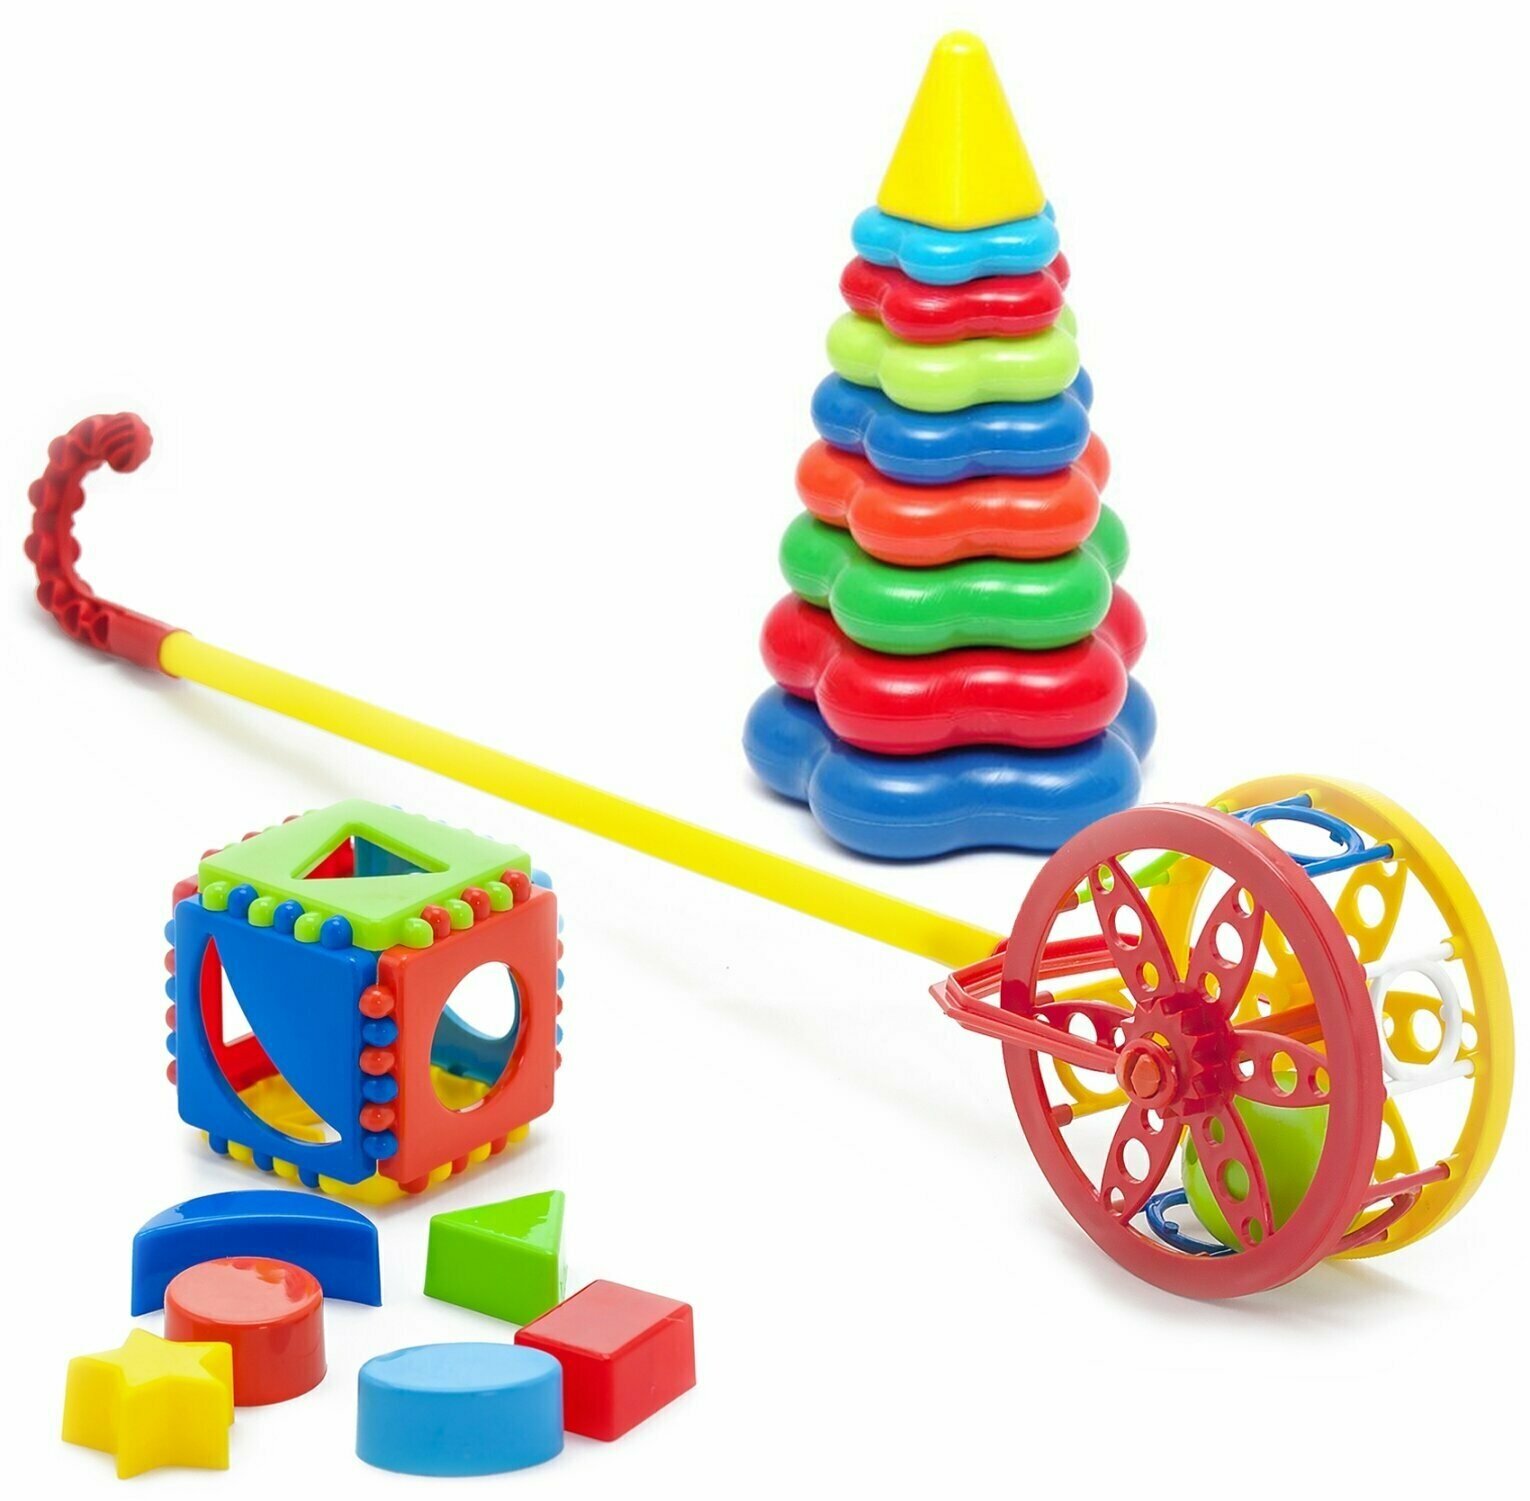 Развивающие игрушки для малышей Каталка "Колесо" + Игрушка "Кубик логический малый" + Пирамидка детская большая